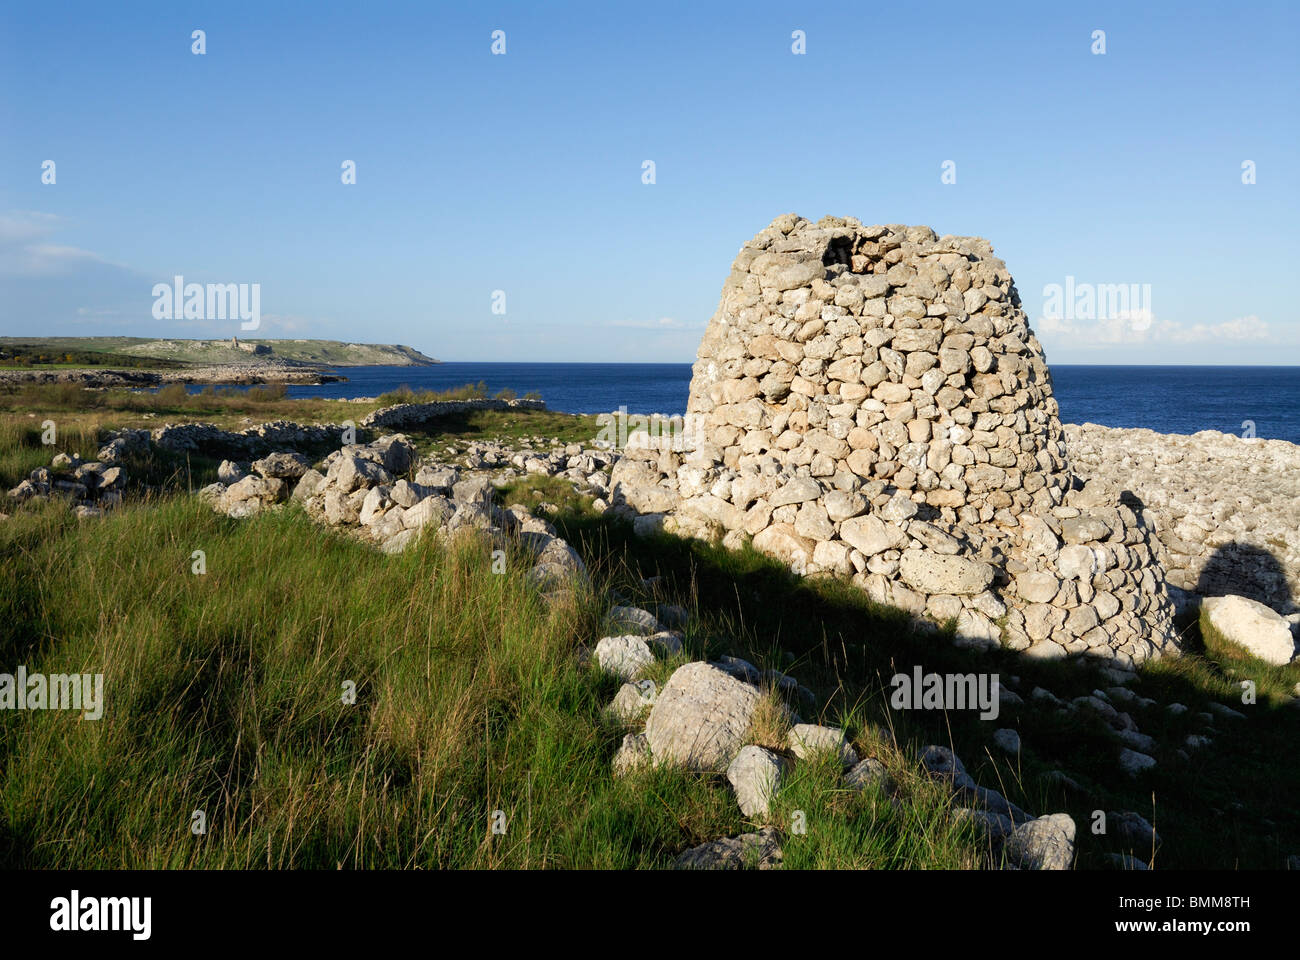 Otranto. Puglia. Italy. Pagghiaro (Trullo Salentino), typical rustic structure made of stones, typical of the region. Stock Photo